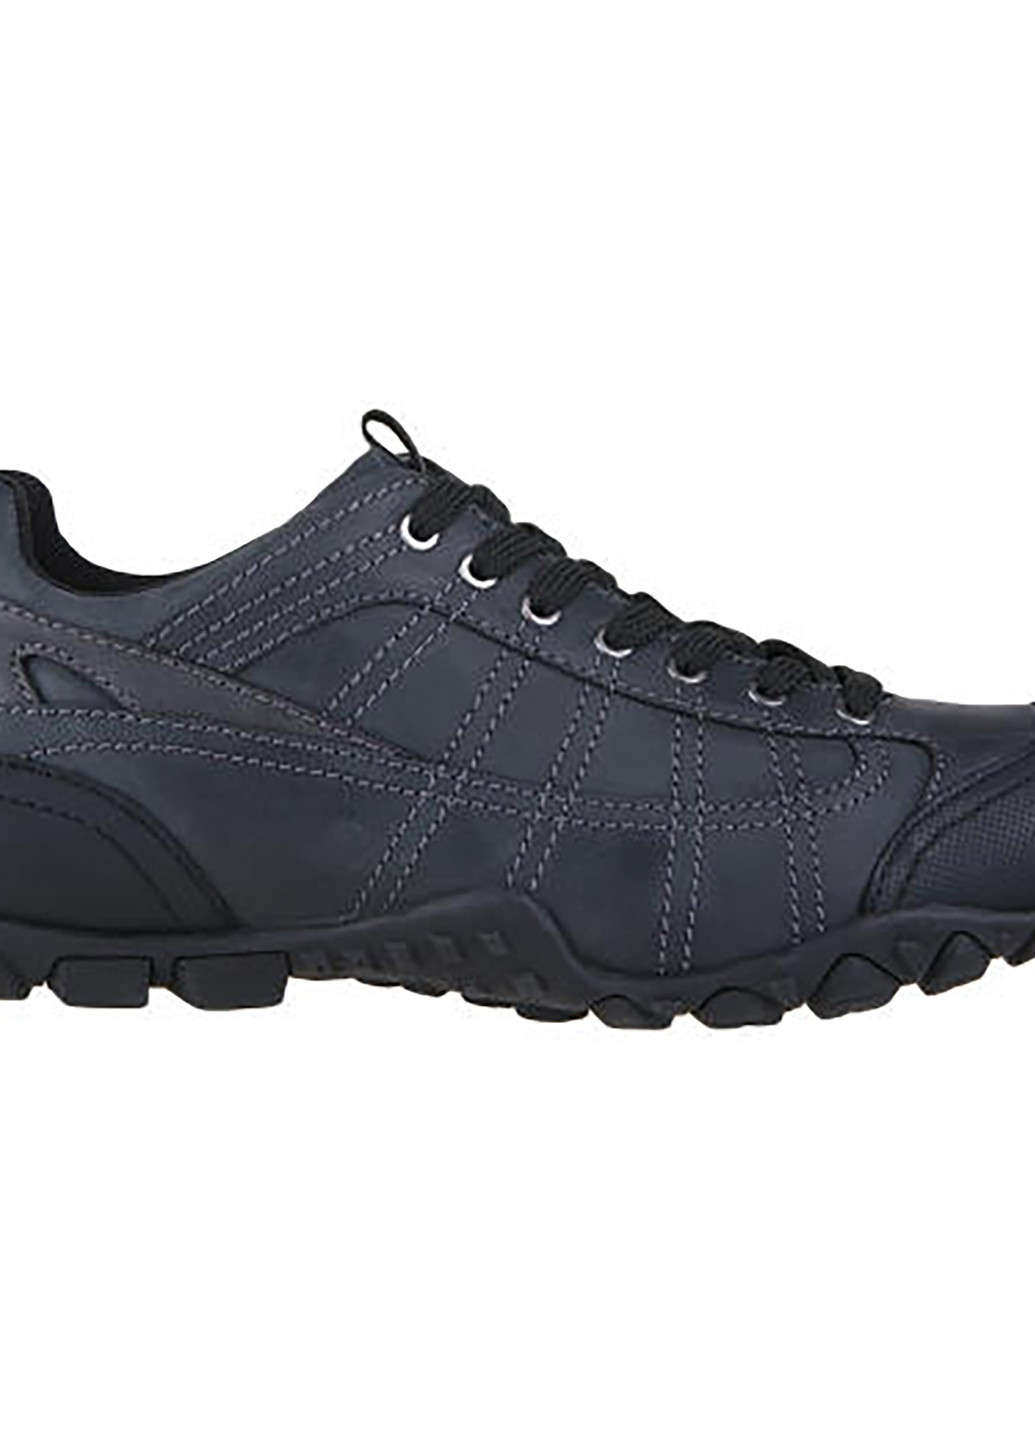 Черные осенние туфлі mi07-b68-a898-05 Lasocki